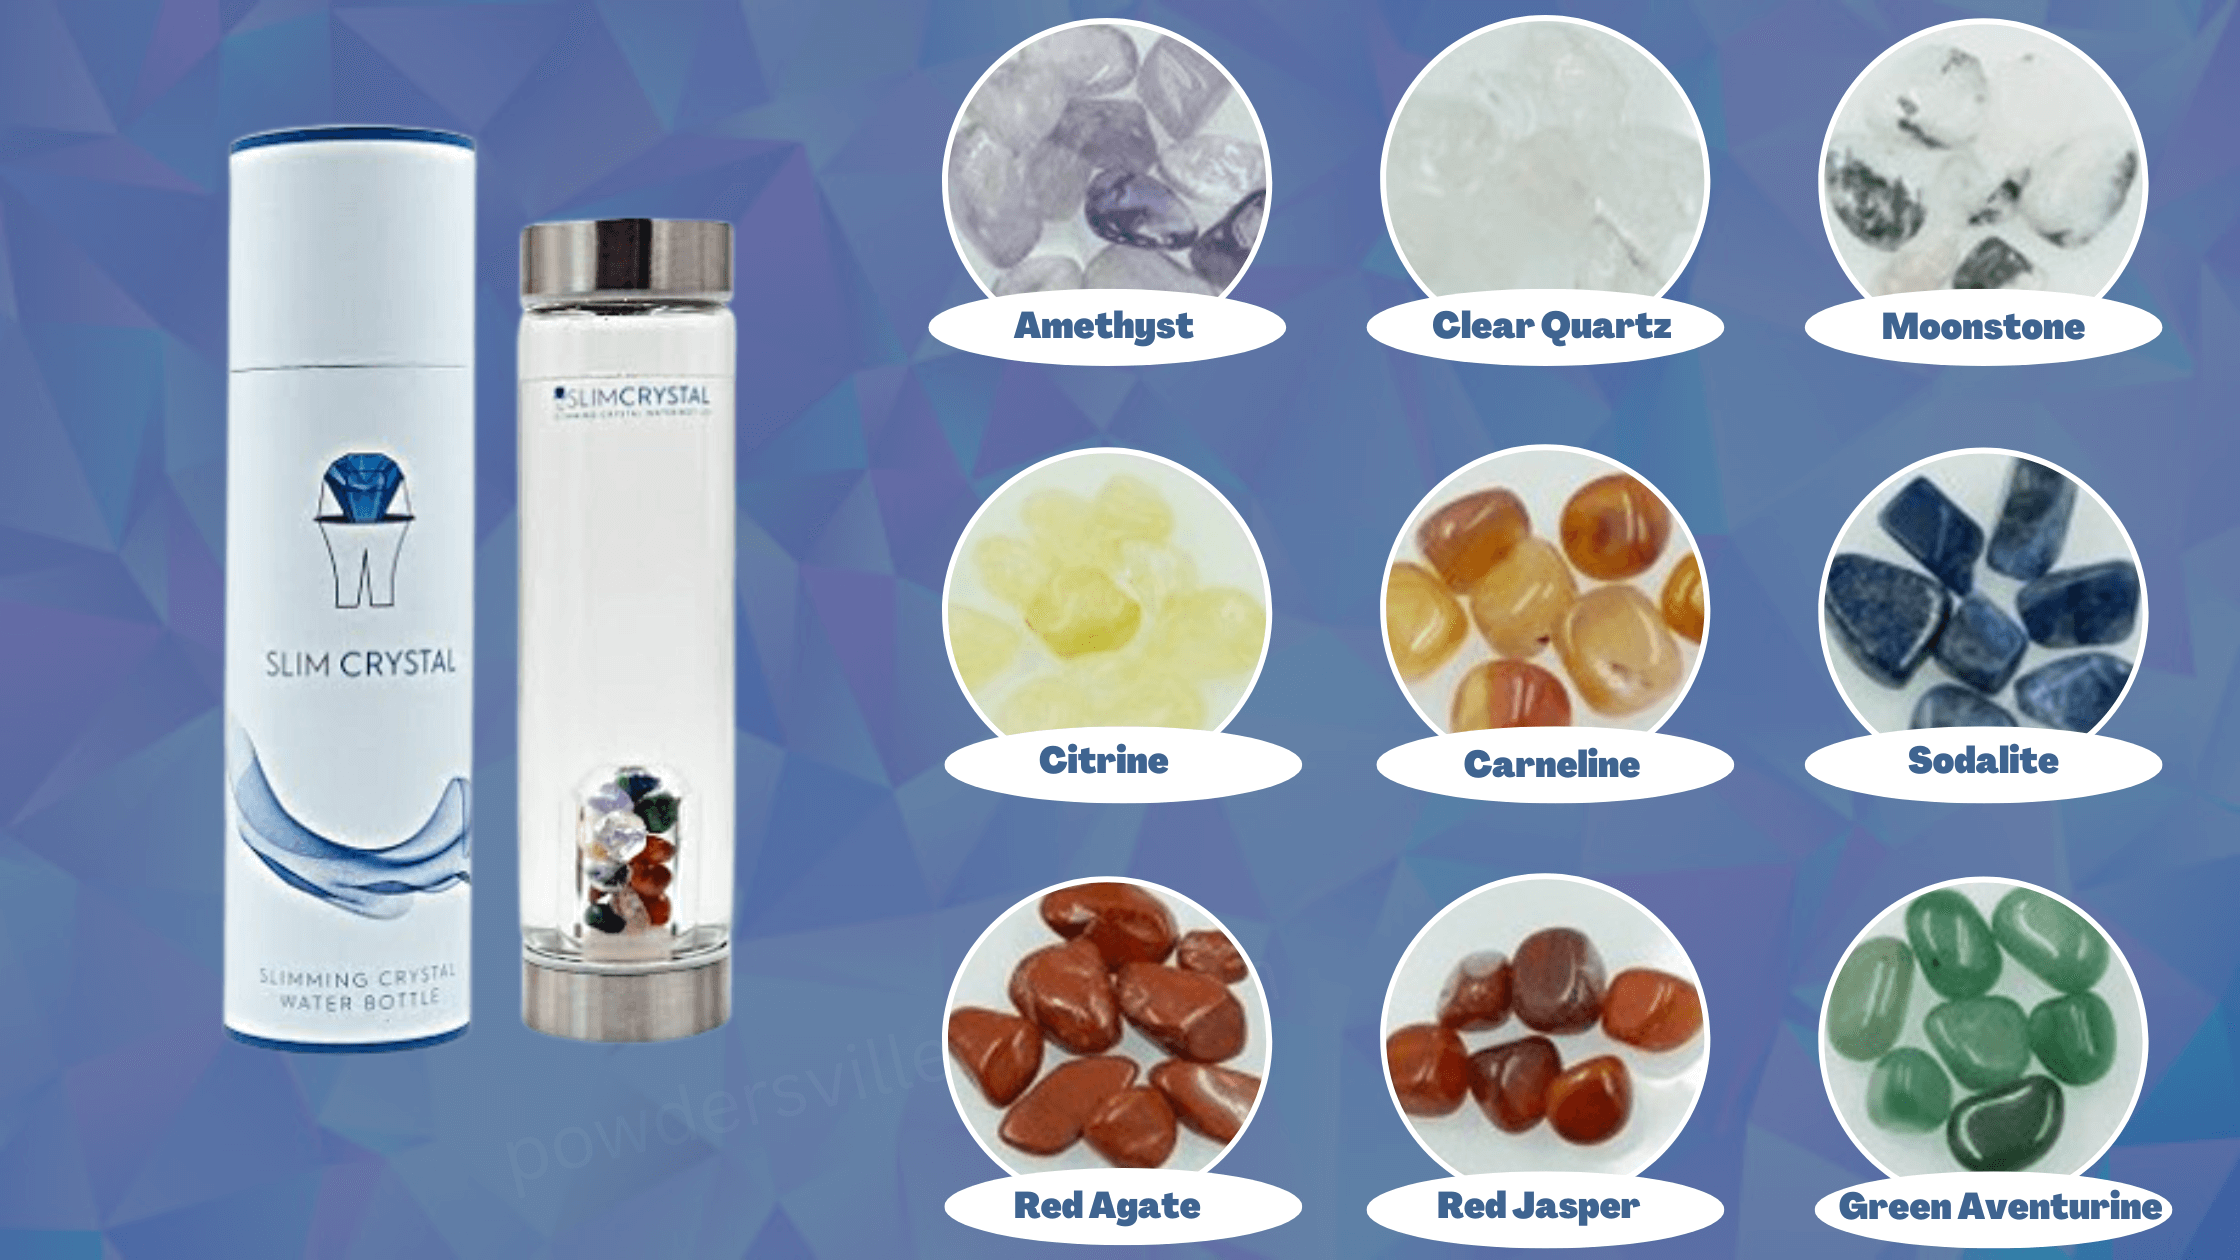 SlimCrystal Water Bottle Ingredients